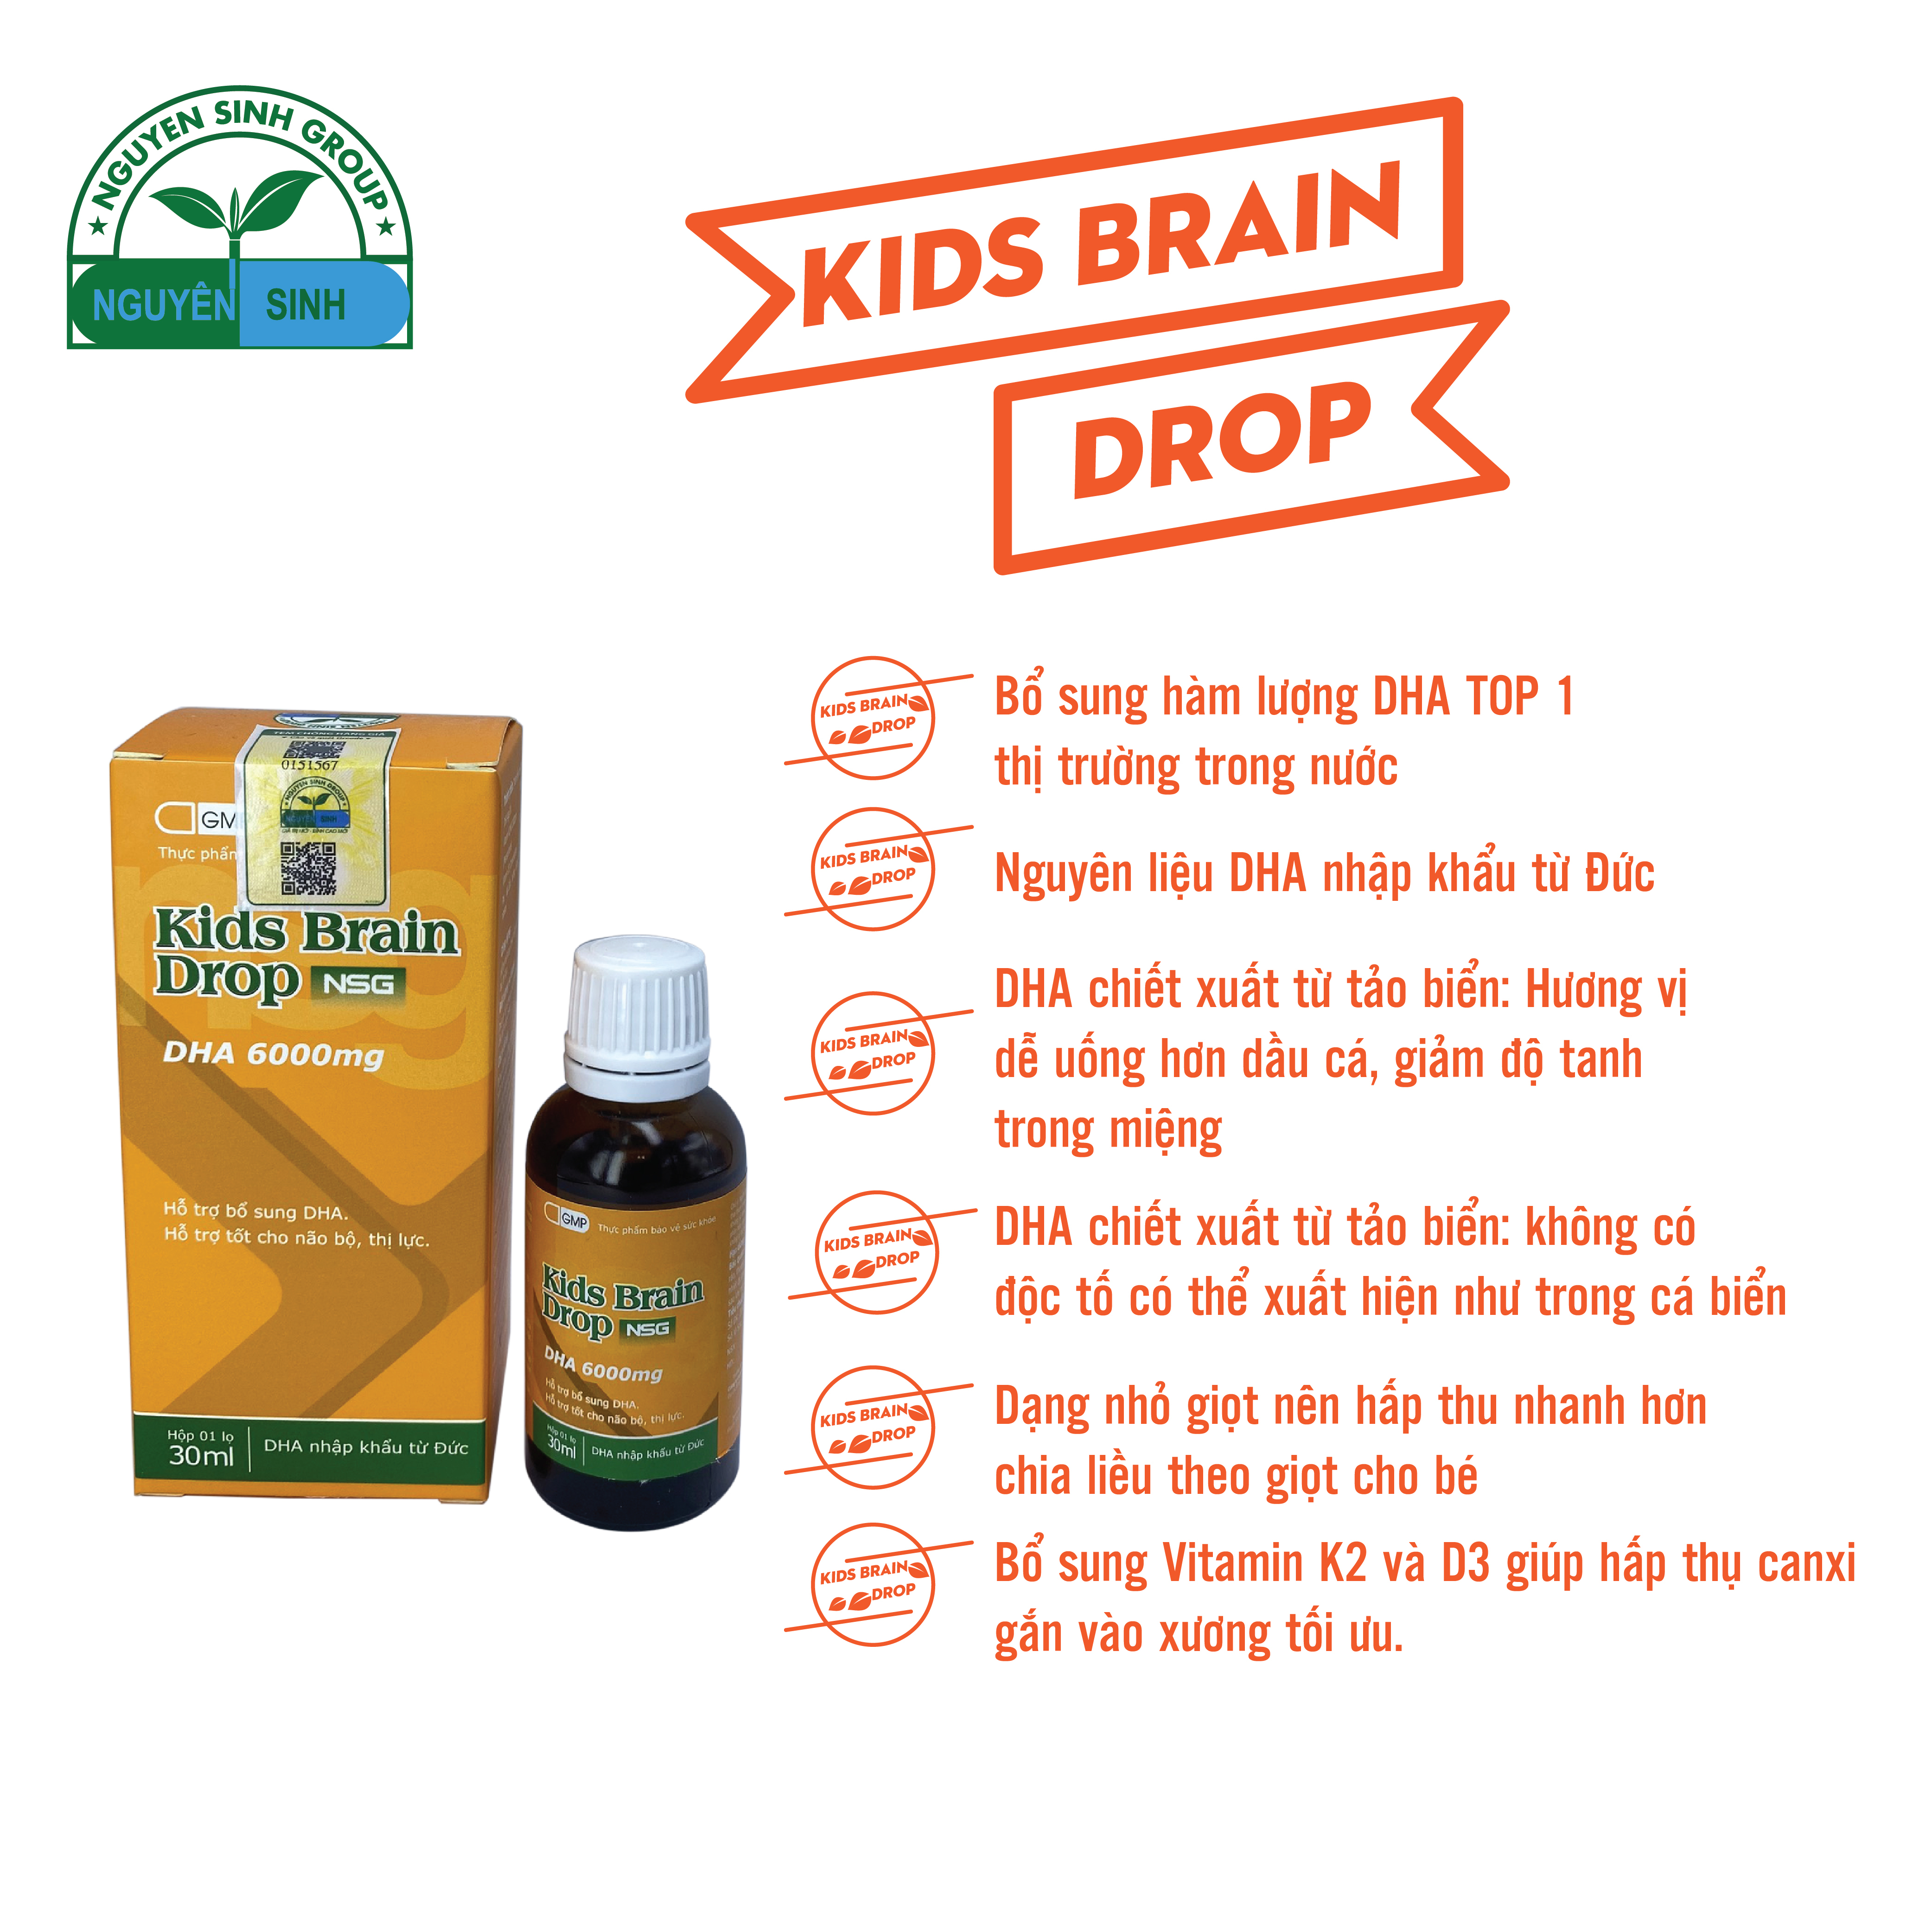 Thực phẩm bổ sung DHA Kids Brain Drop NSG